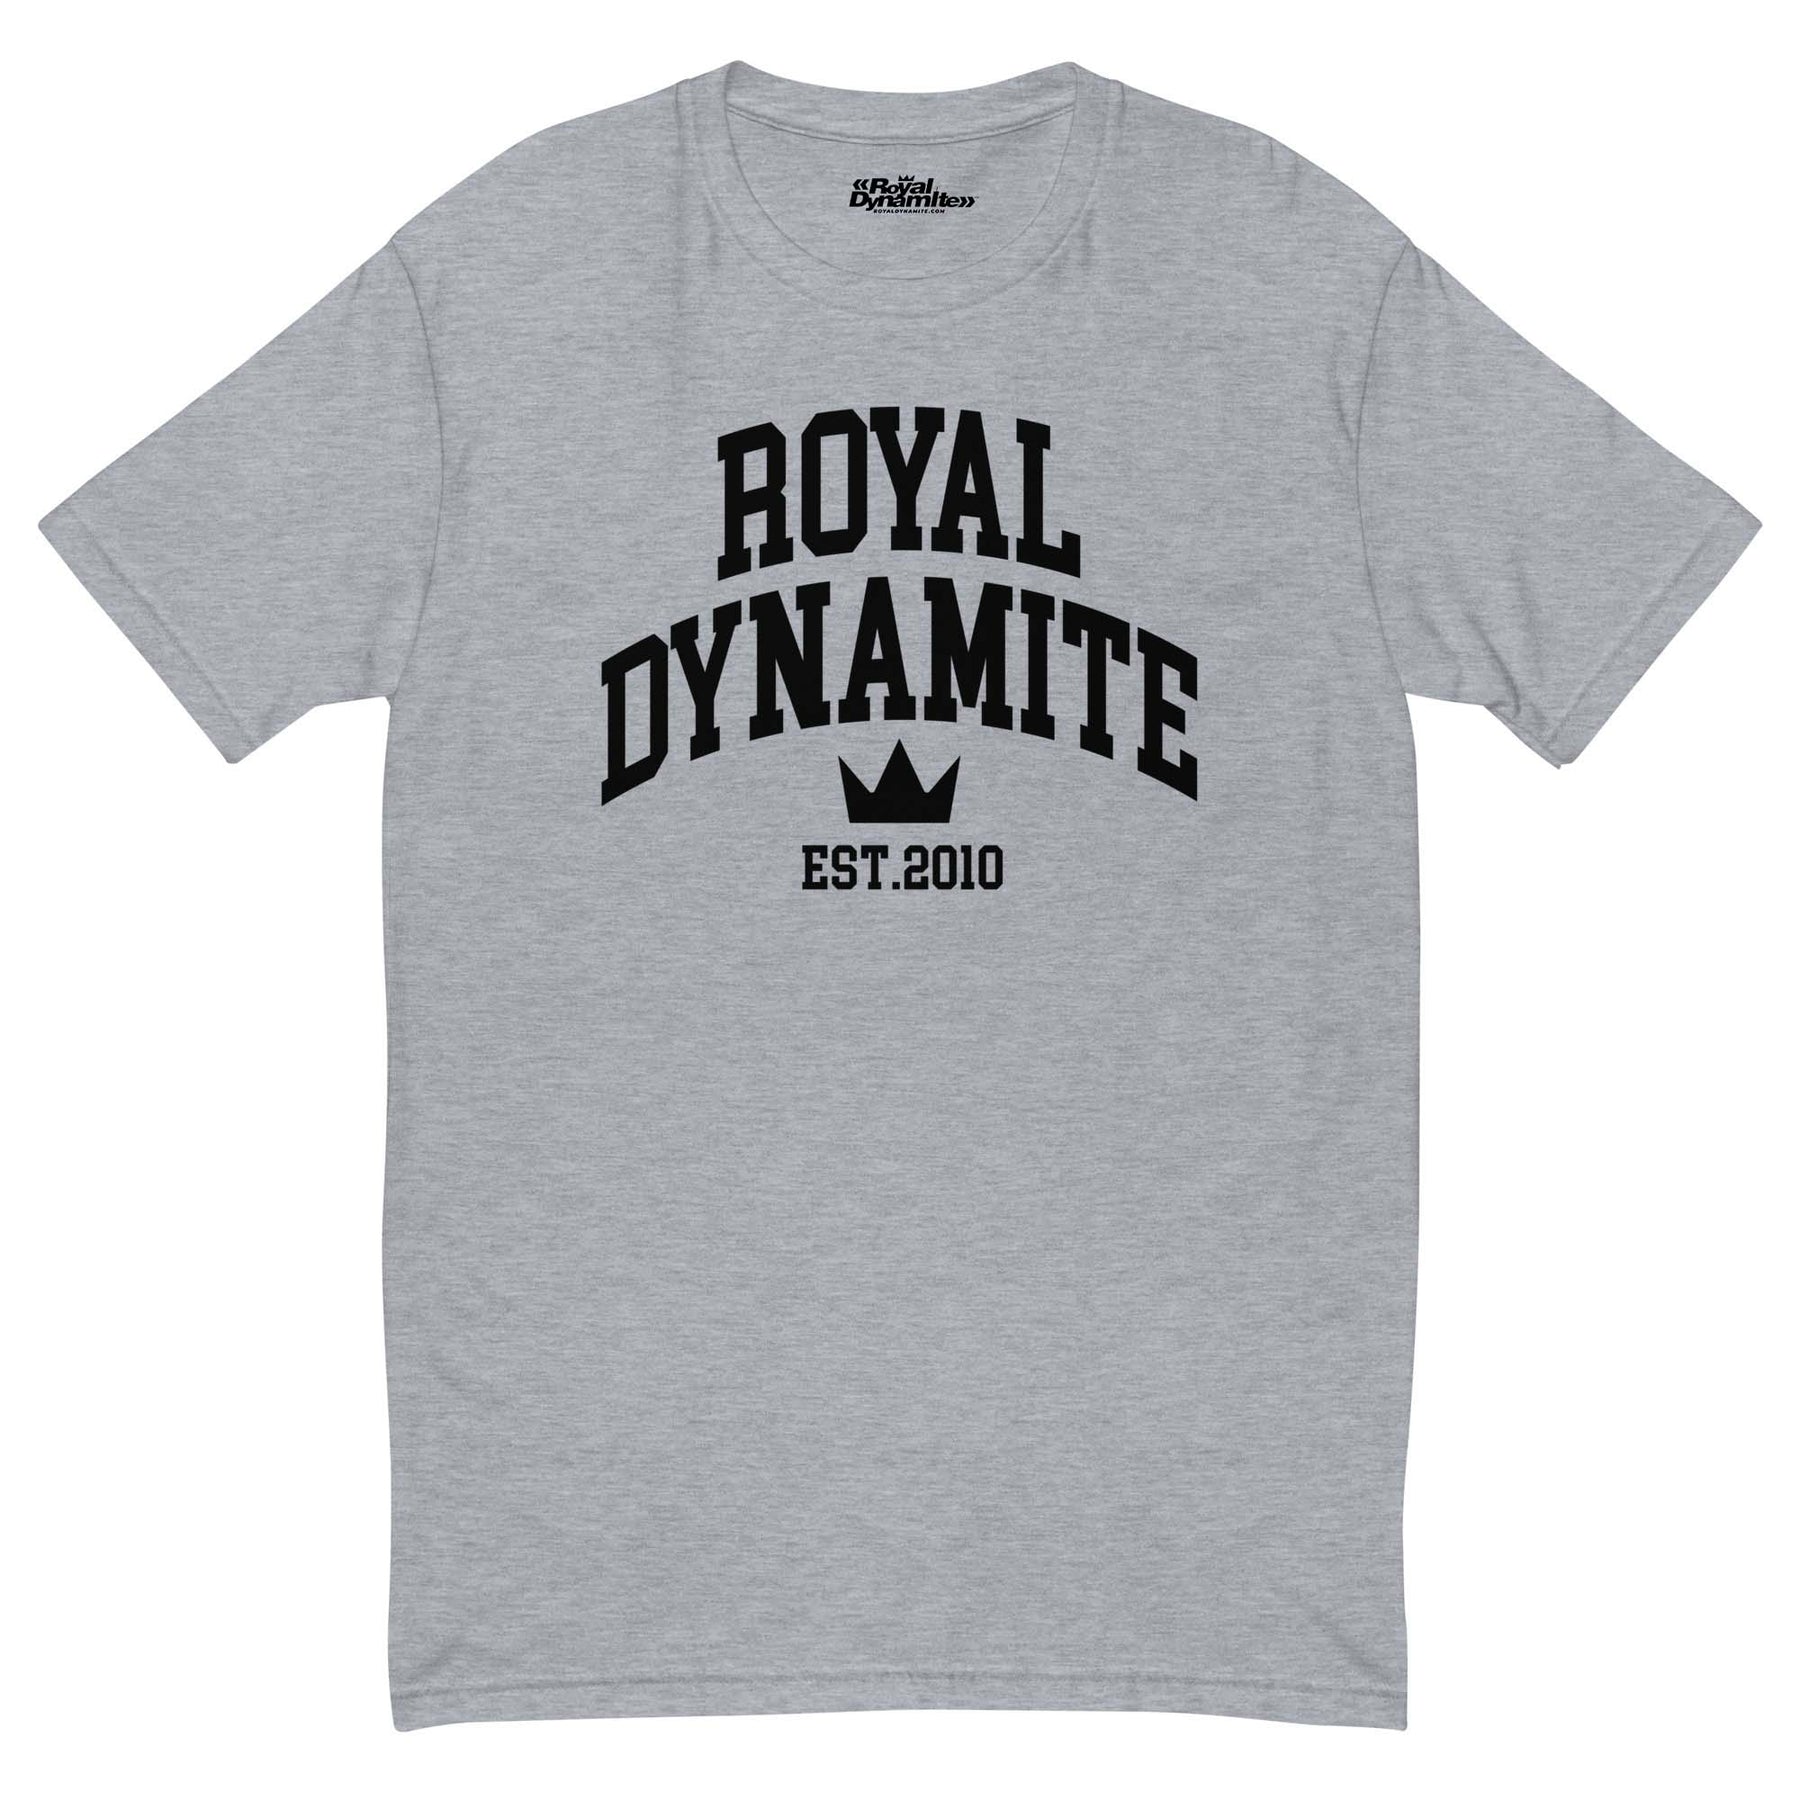 New Royal Dynamite Tshirt